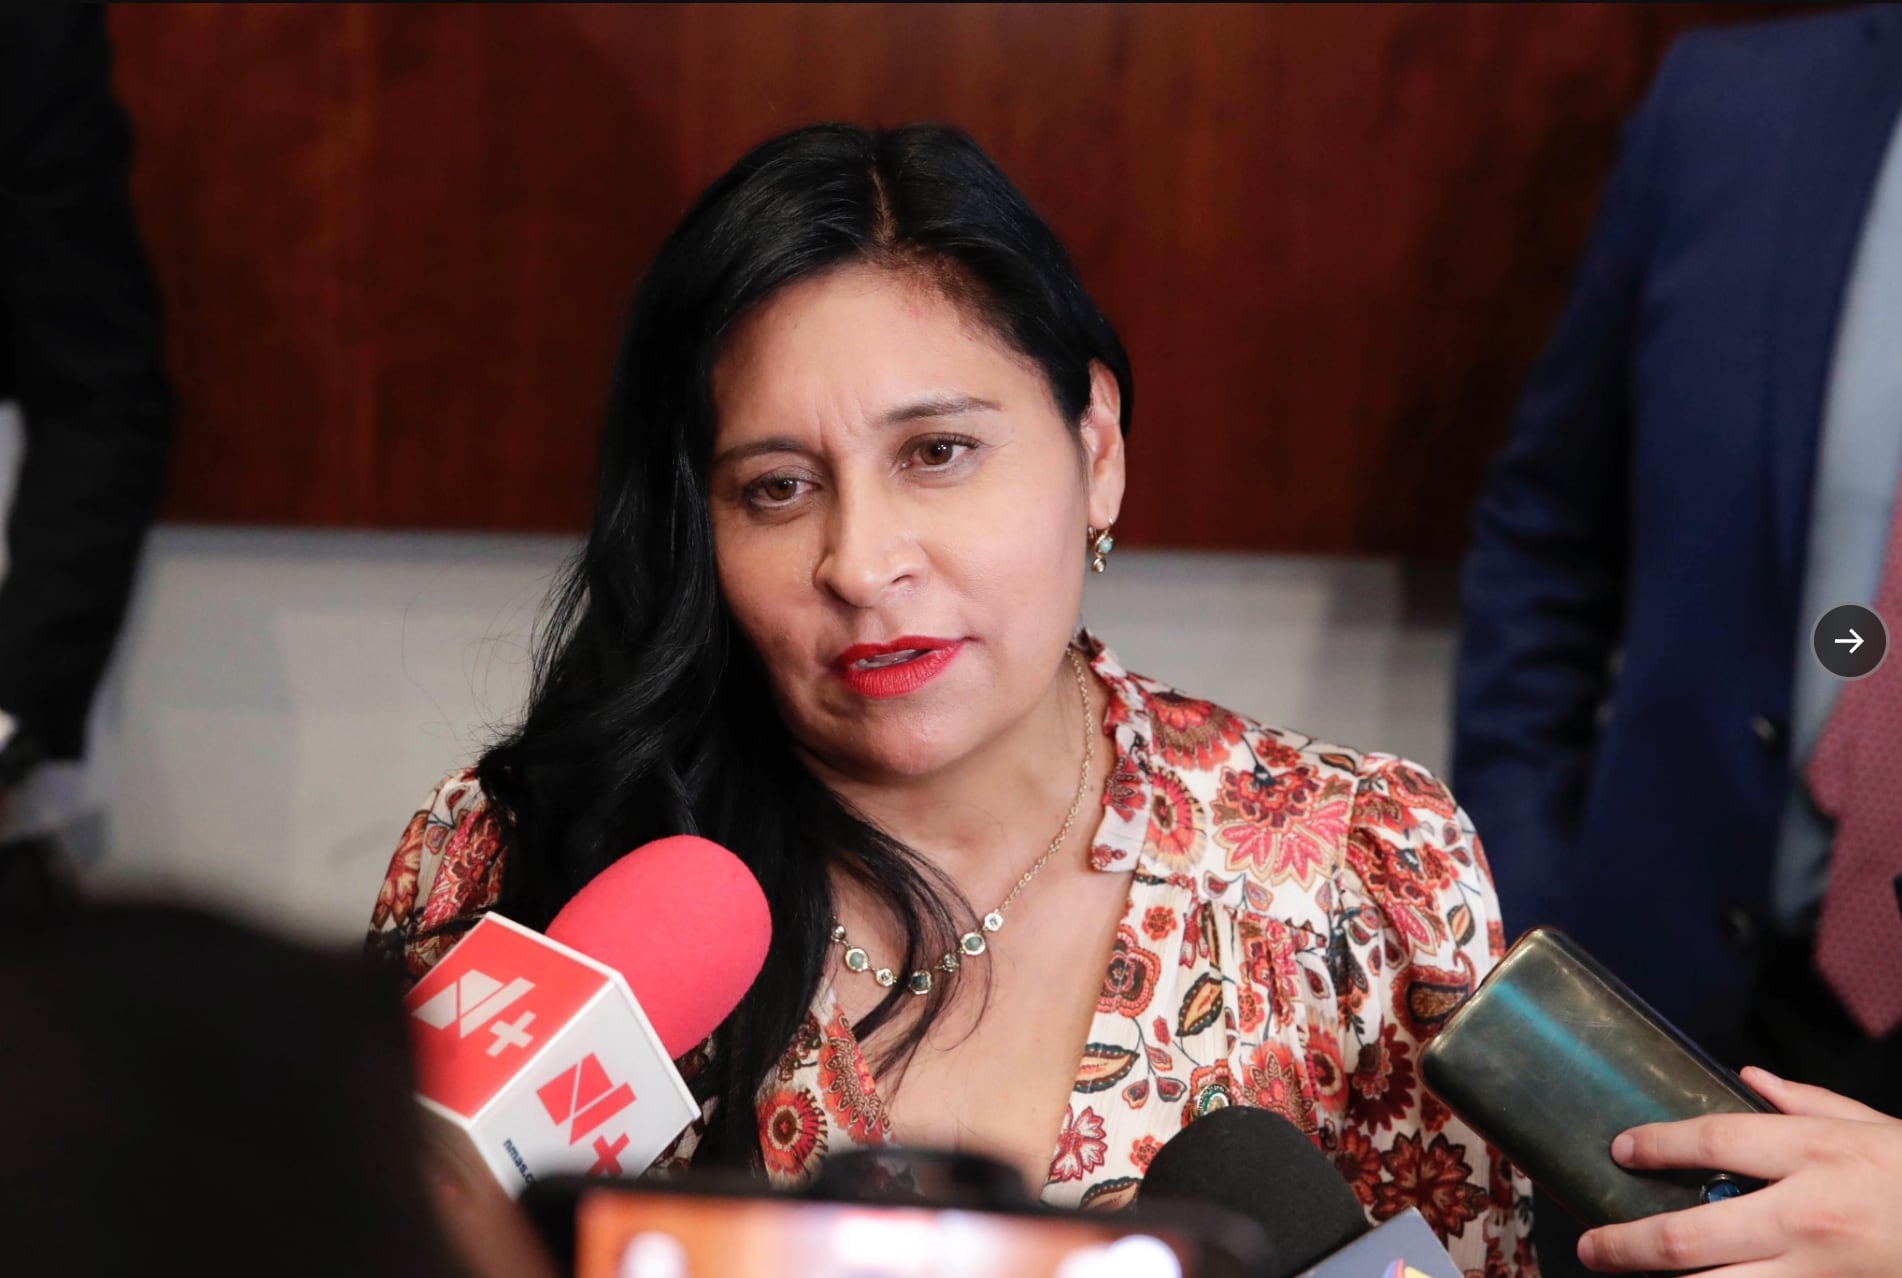 La presidenta de la Cámara de Senadores habló sobre la renuncia del ministro Arturo Zaldívar, la cual tendrá que ser aprobada por el presidente AMLO y los senadores.